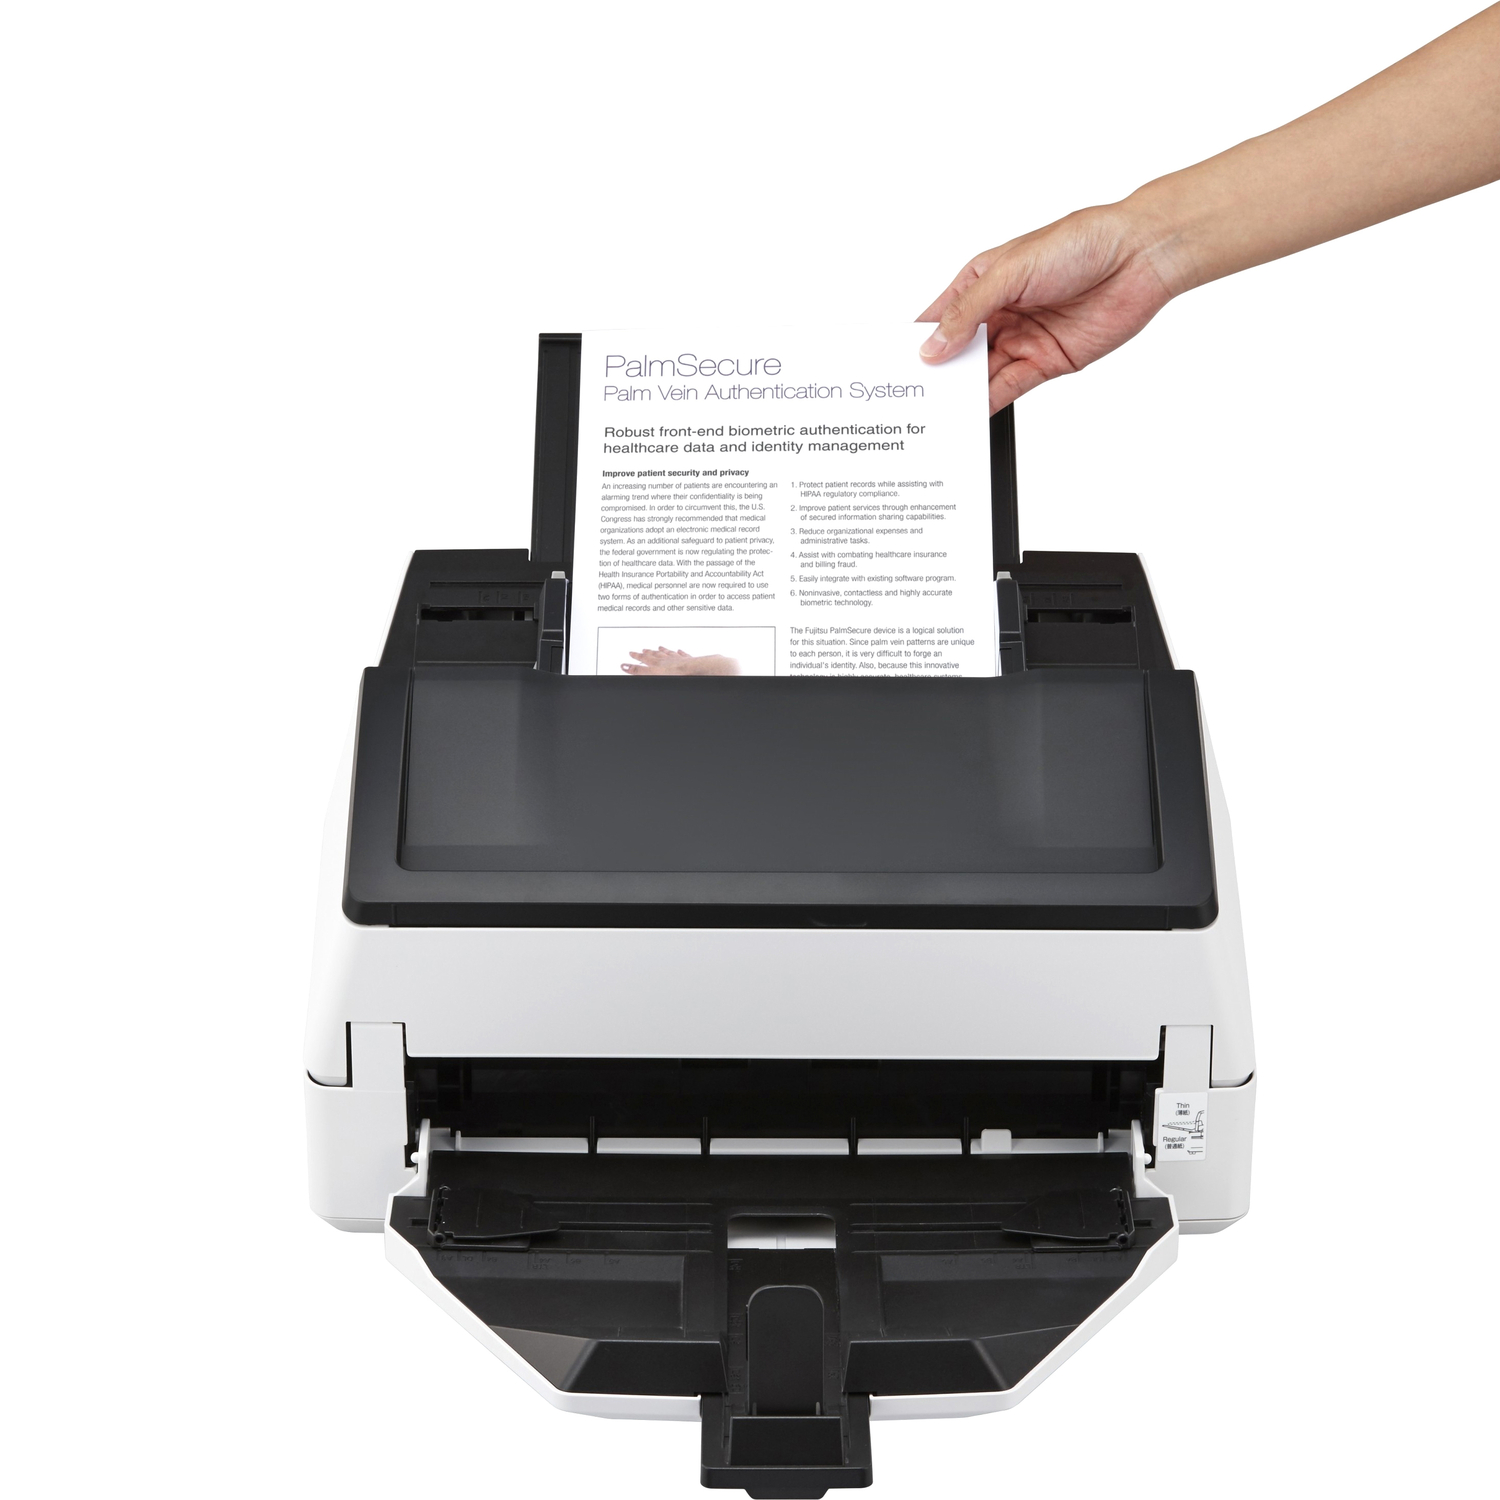 fi-7600 Документ сканер А3, двухсторонний, 100 стр/мин, автопод. 300 листов, USB 3.0 fujitsu PA74-B51